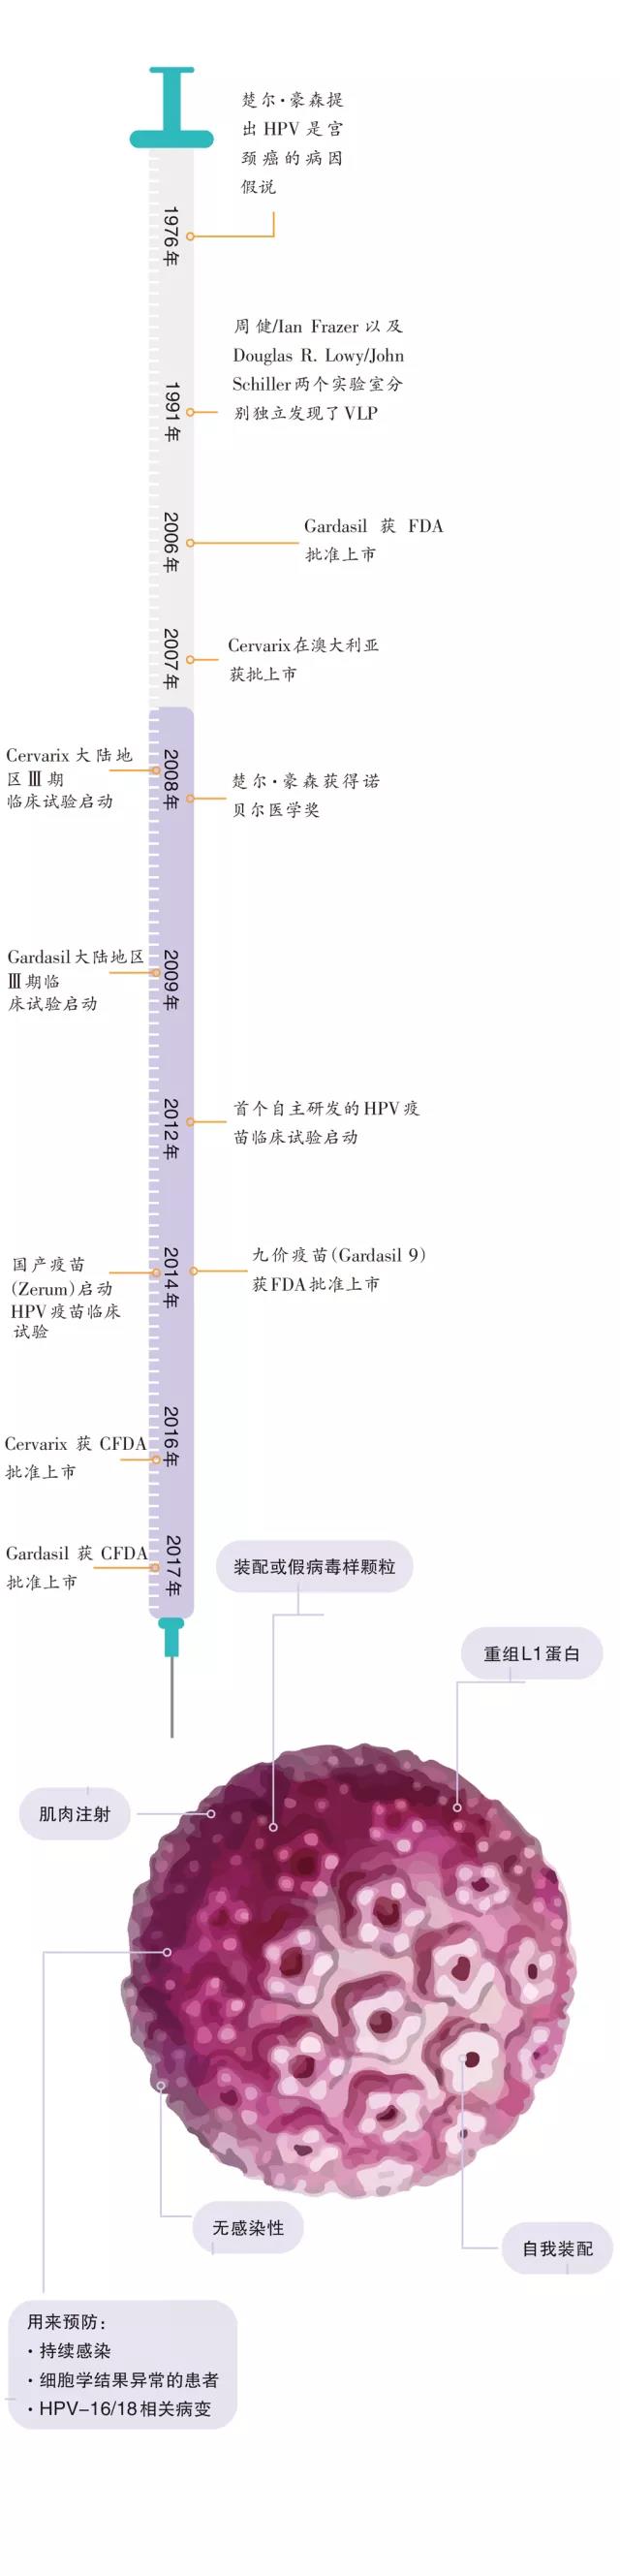 中国宫颈癌防治研究20年历程